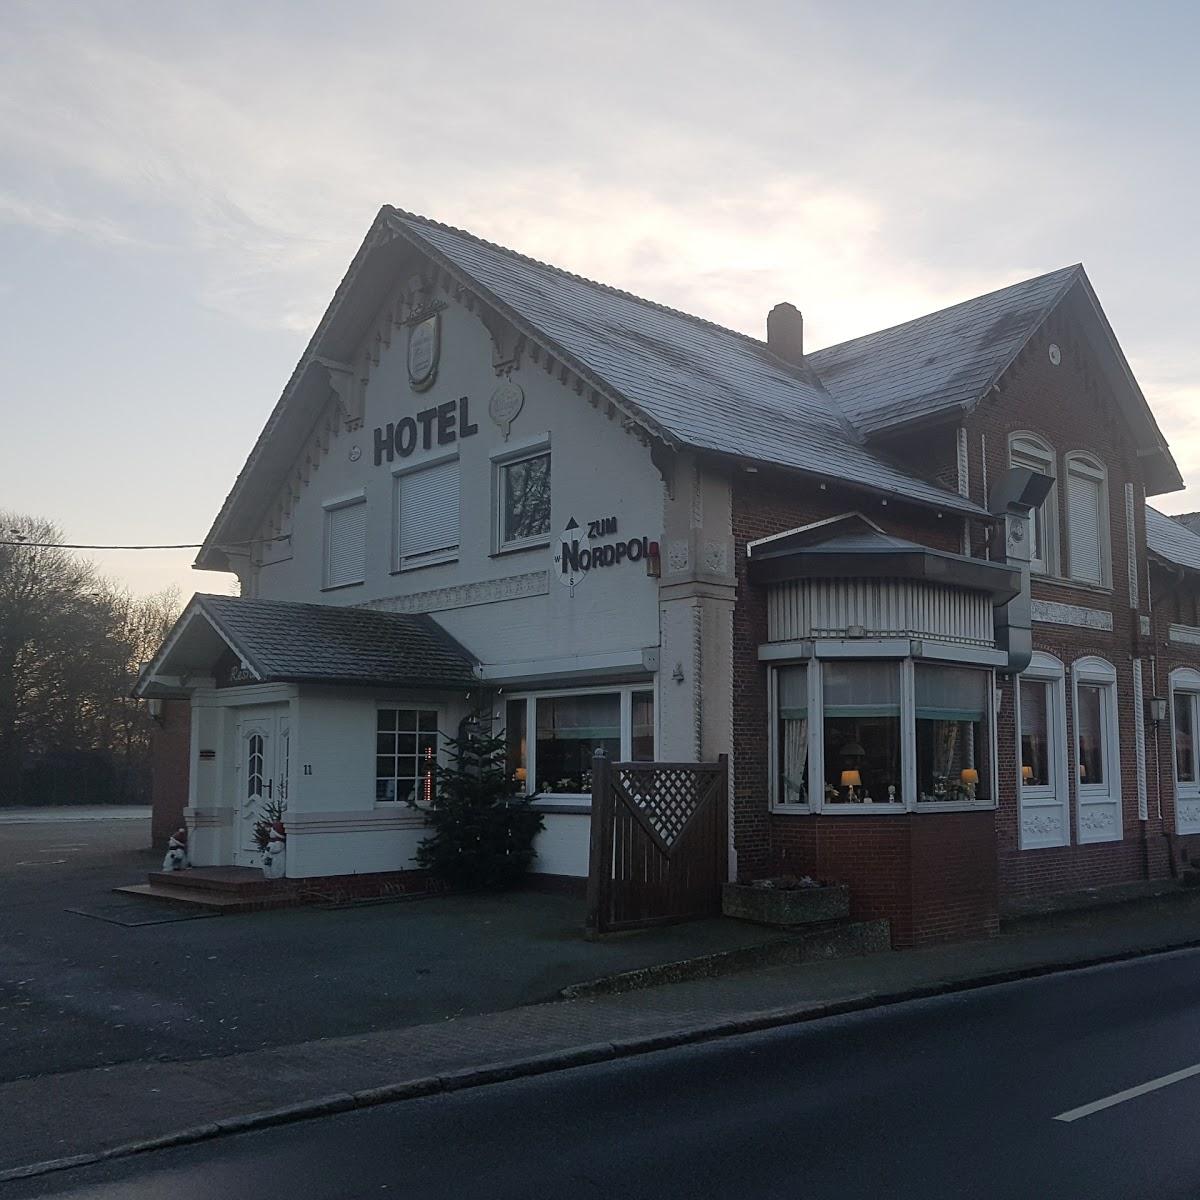 Restaurant "Hotel zum Nordpol" in  Schenefeld